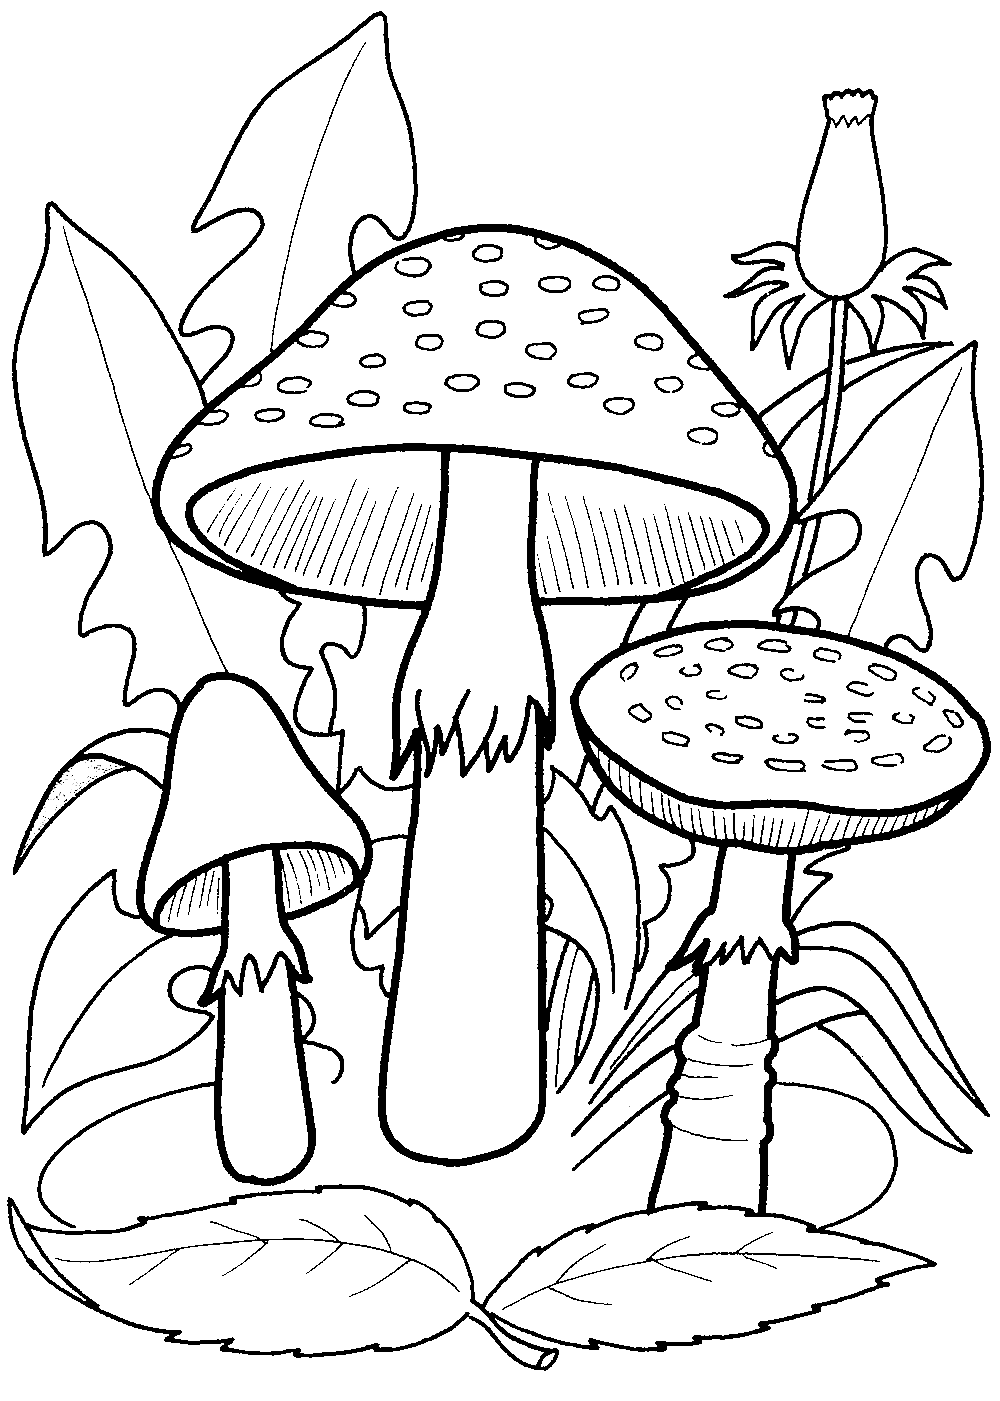 Три красивых гриба из Mushroom